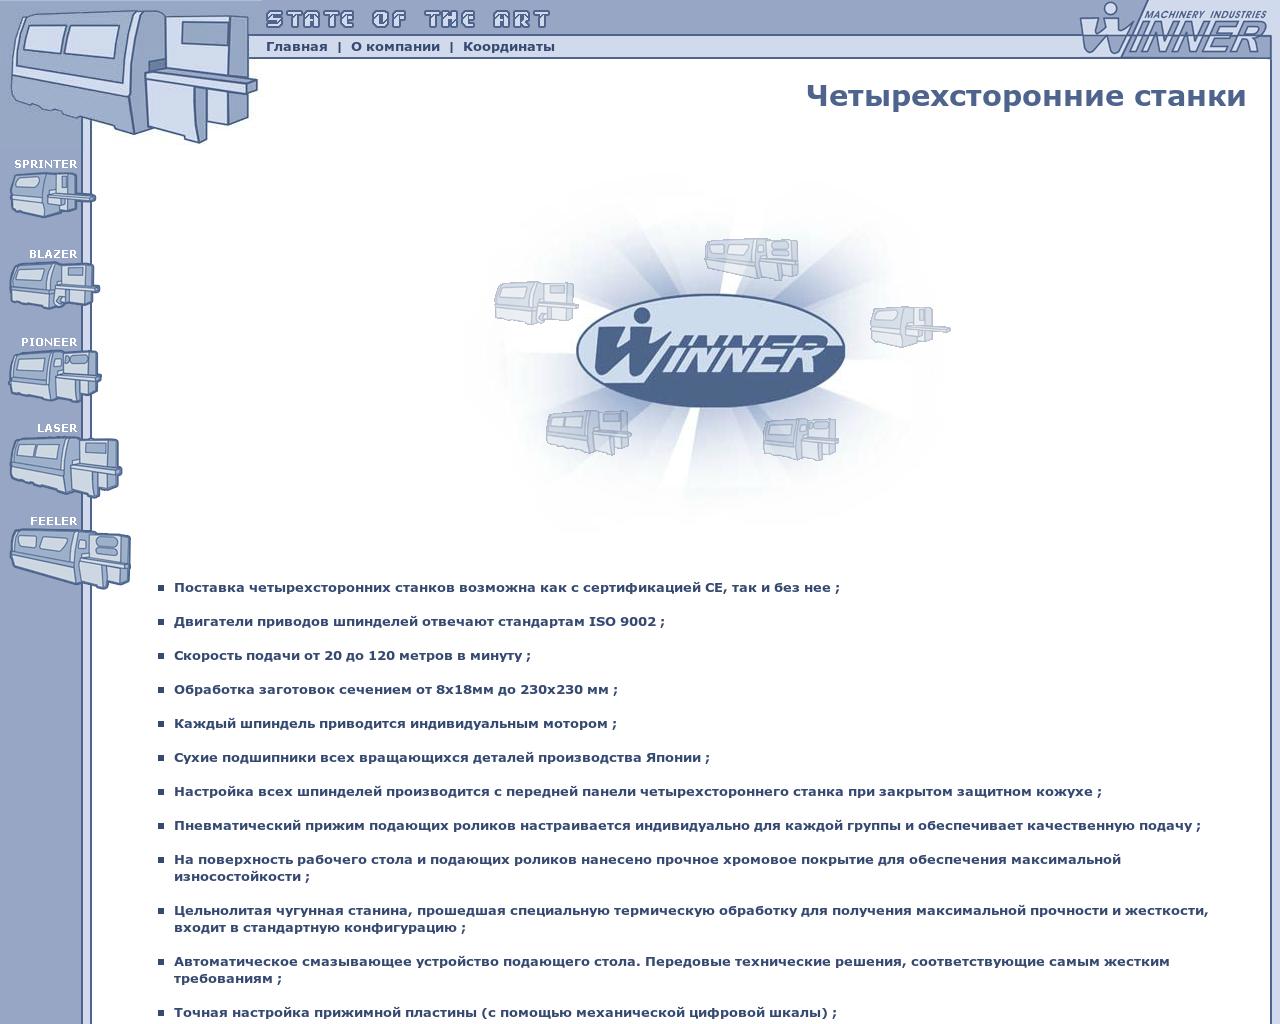 Изображение сайта winnerm.ru в разрешении 1280x1024